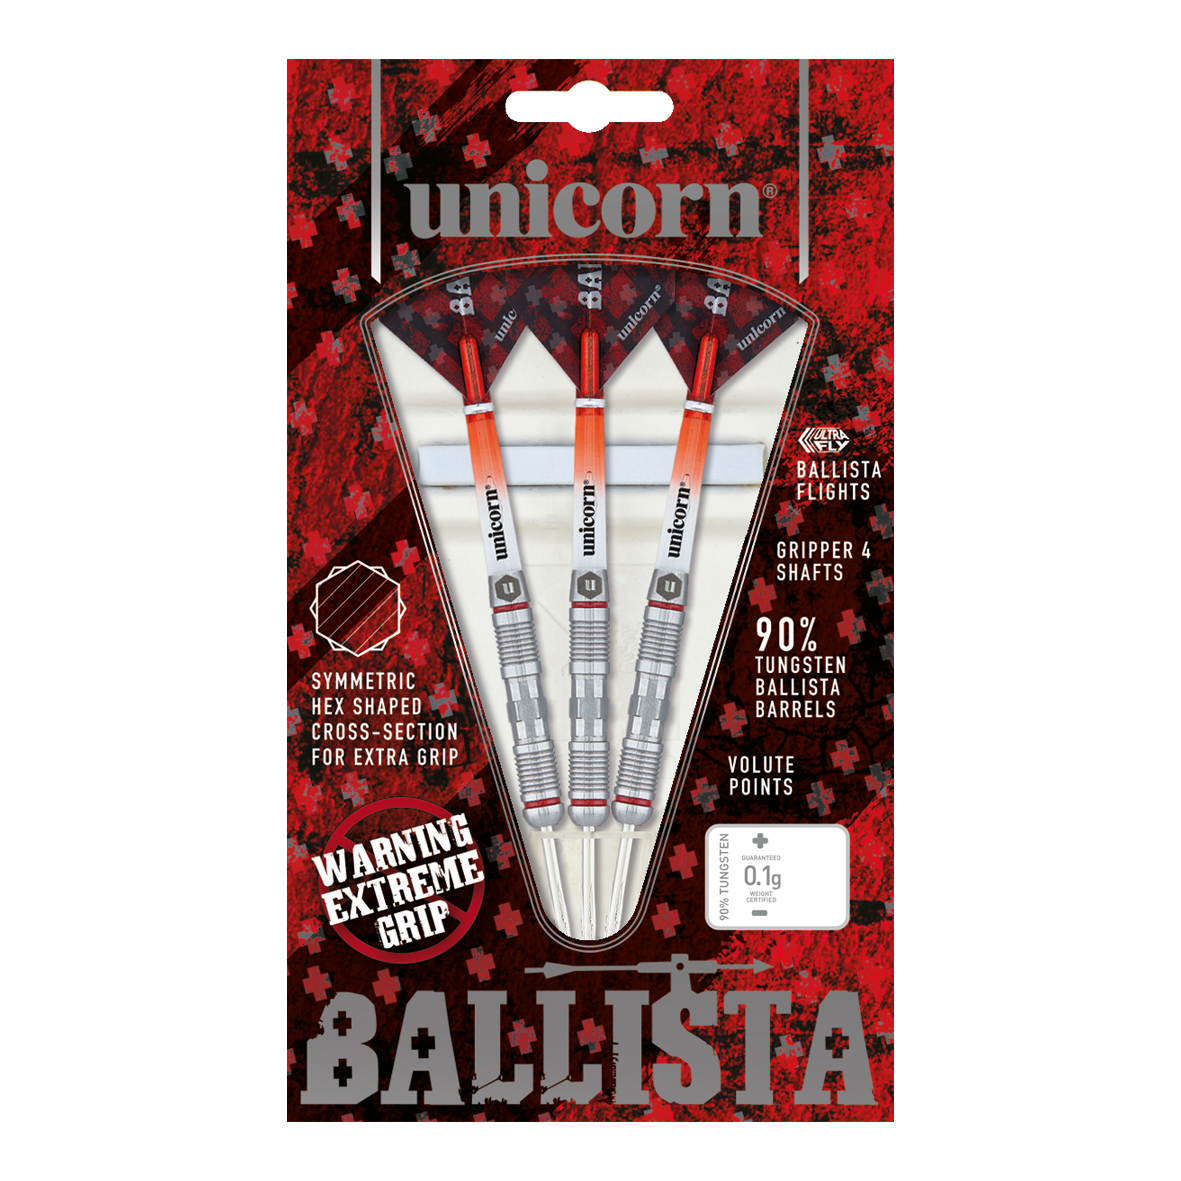 Unicorn Ballista Style 2 steel darts